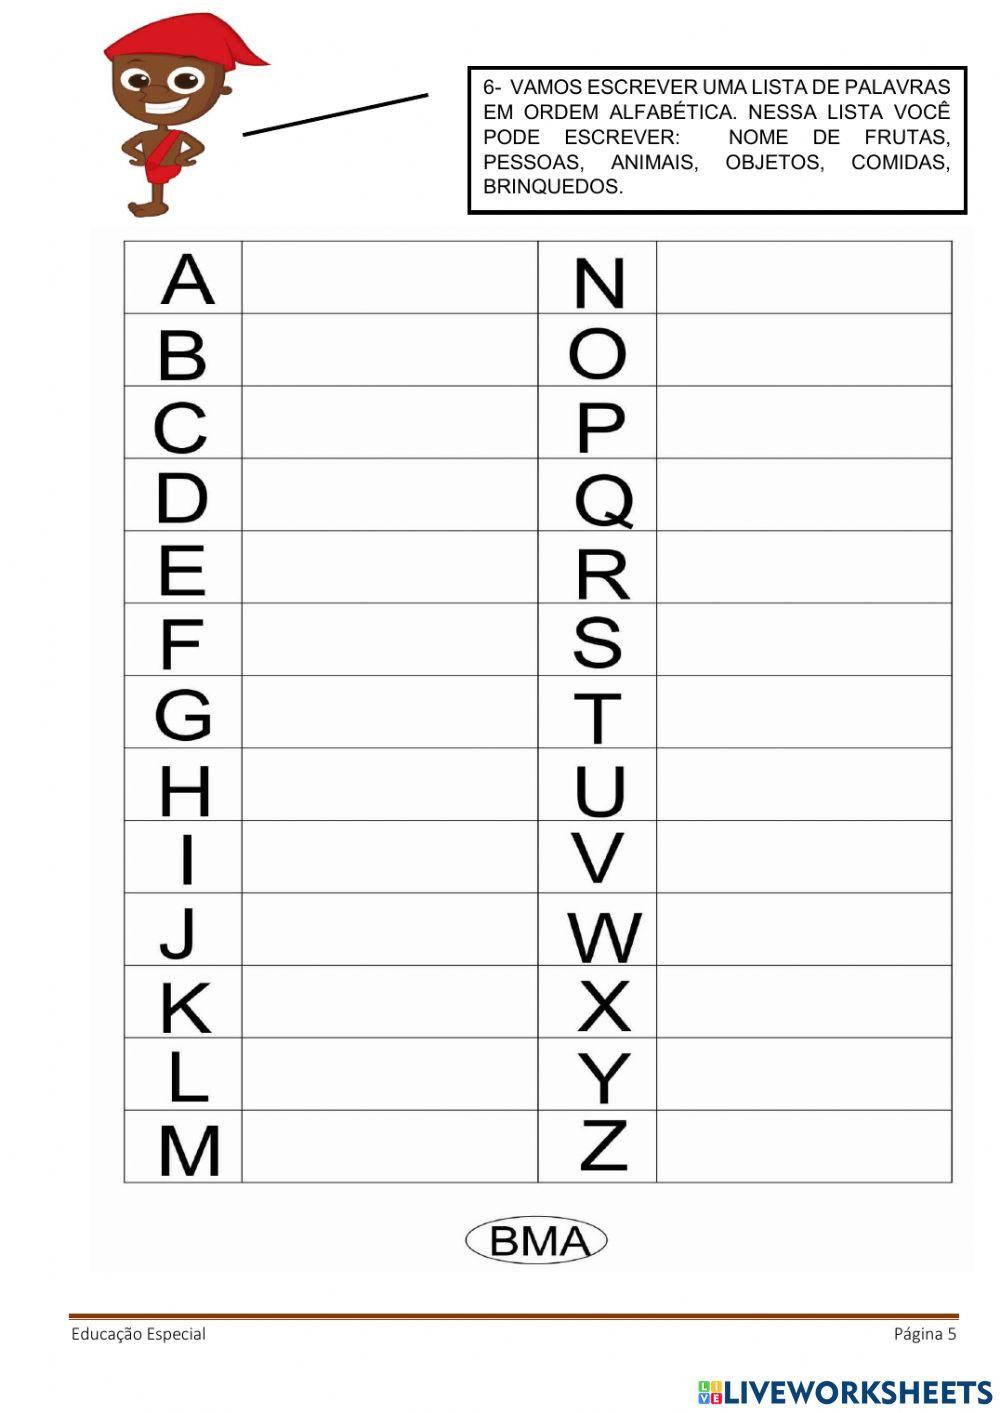 Alfabeto ilustrado, nome das figuras, trava-língua, lista de palavras, vogais.